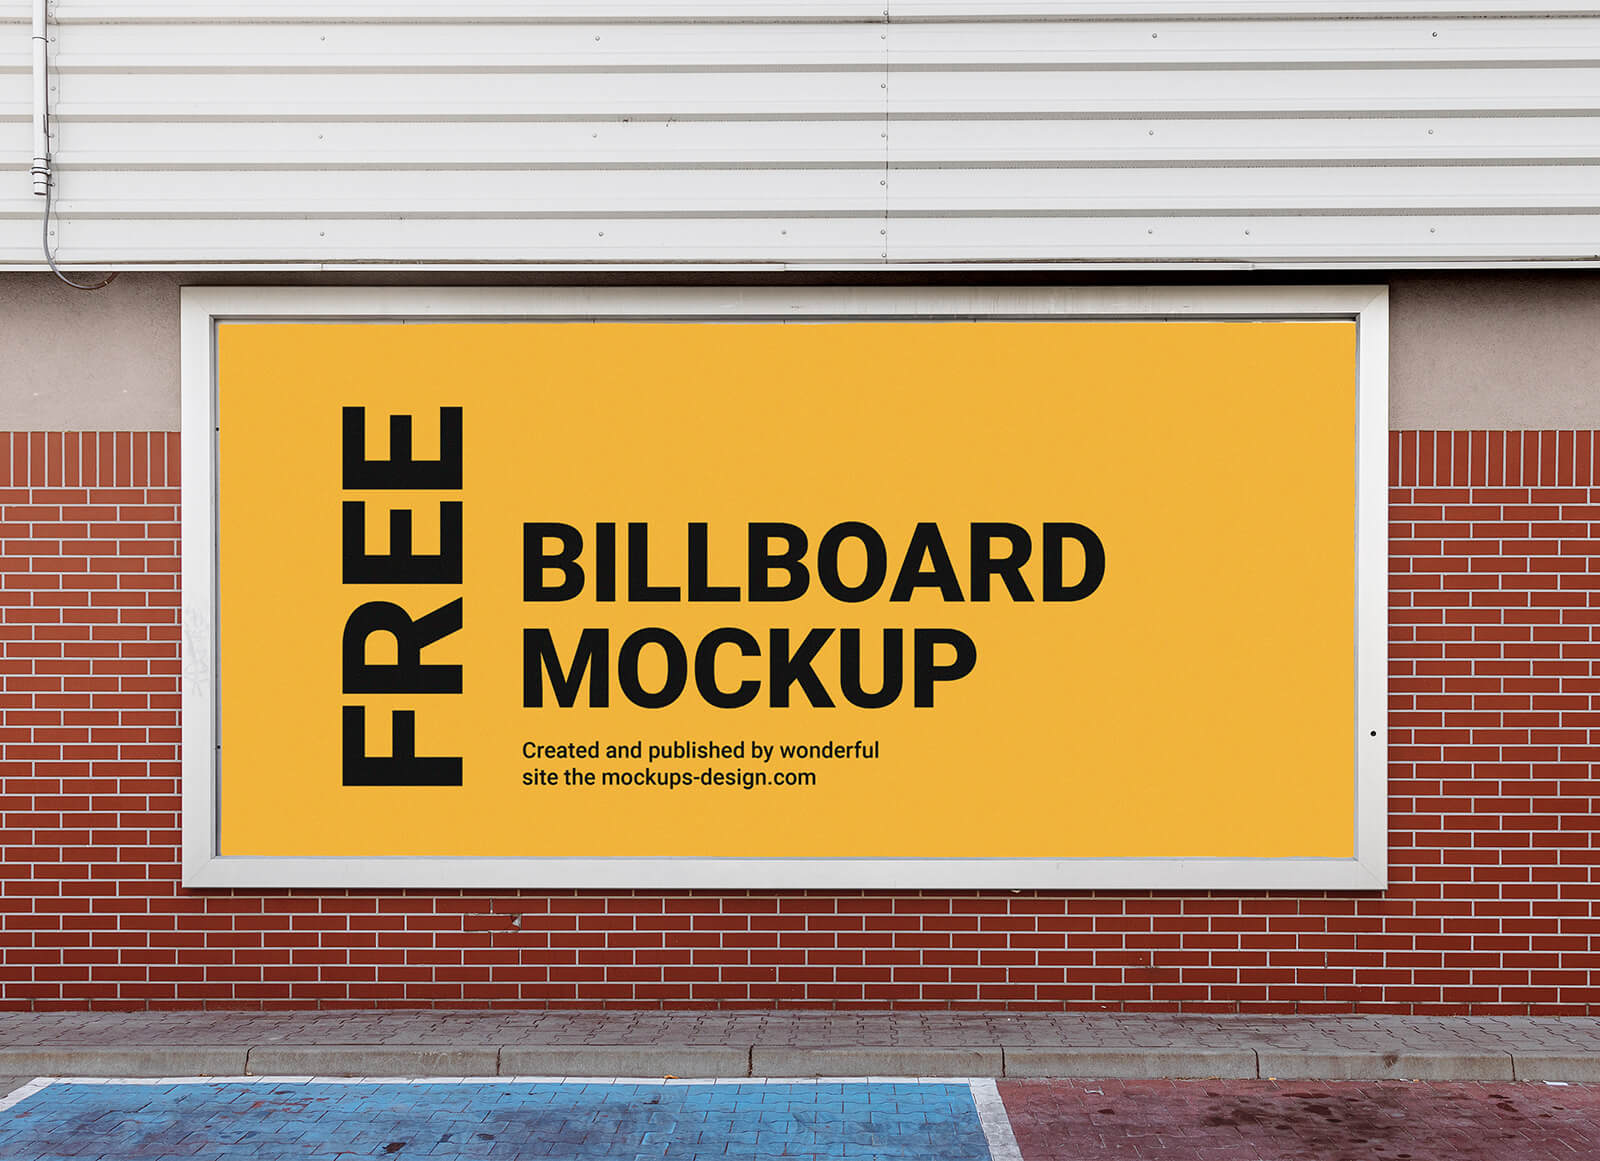 Free-On-Wall-Billboard-Mockup-PSD